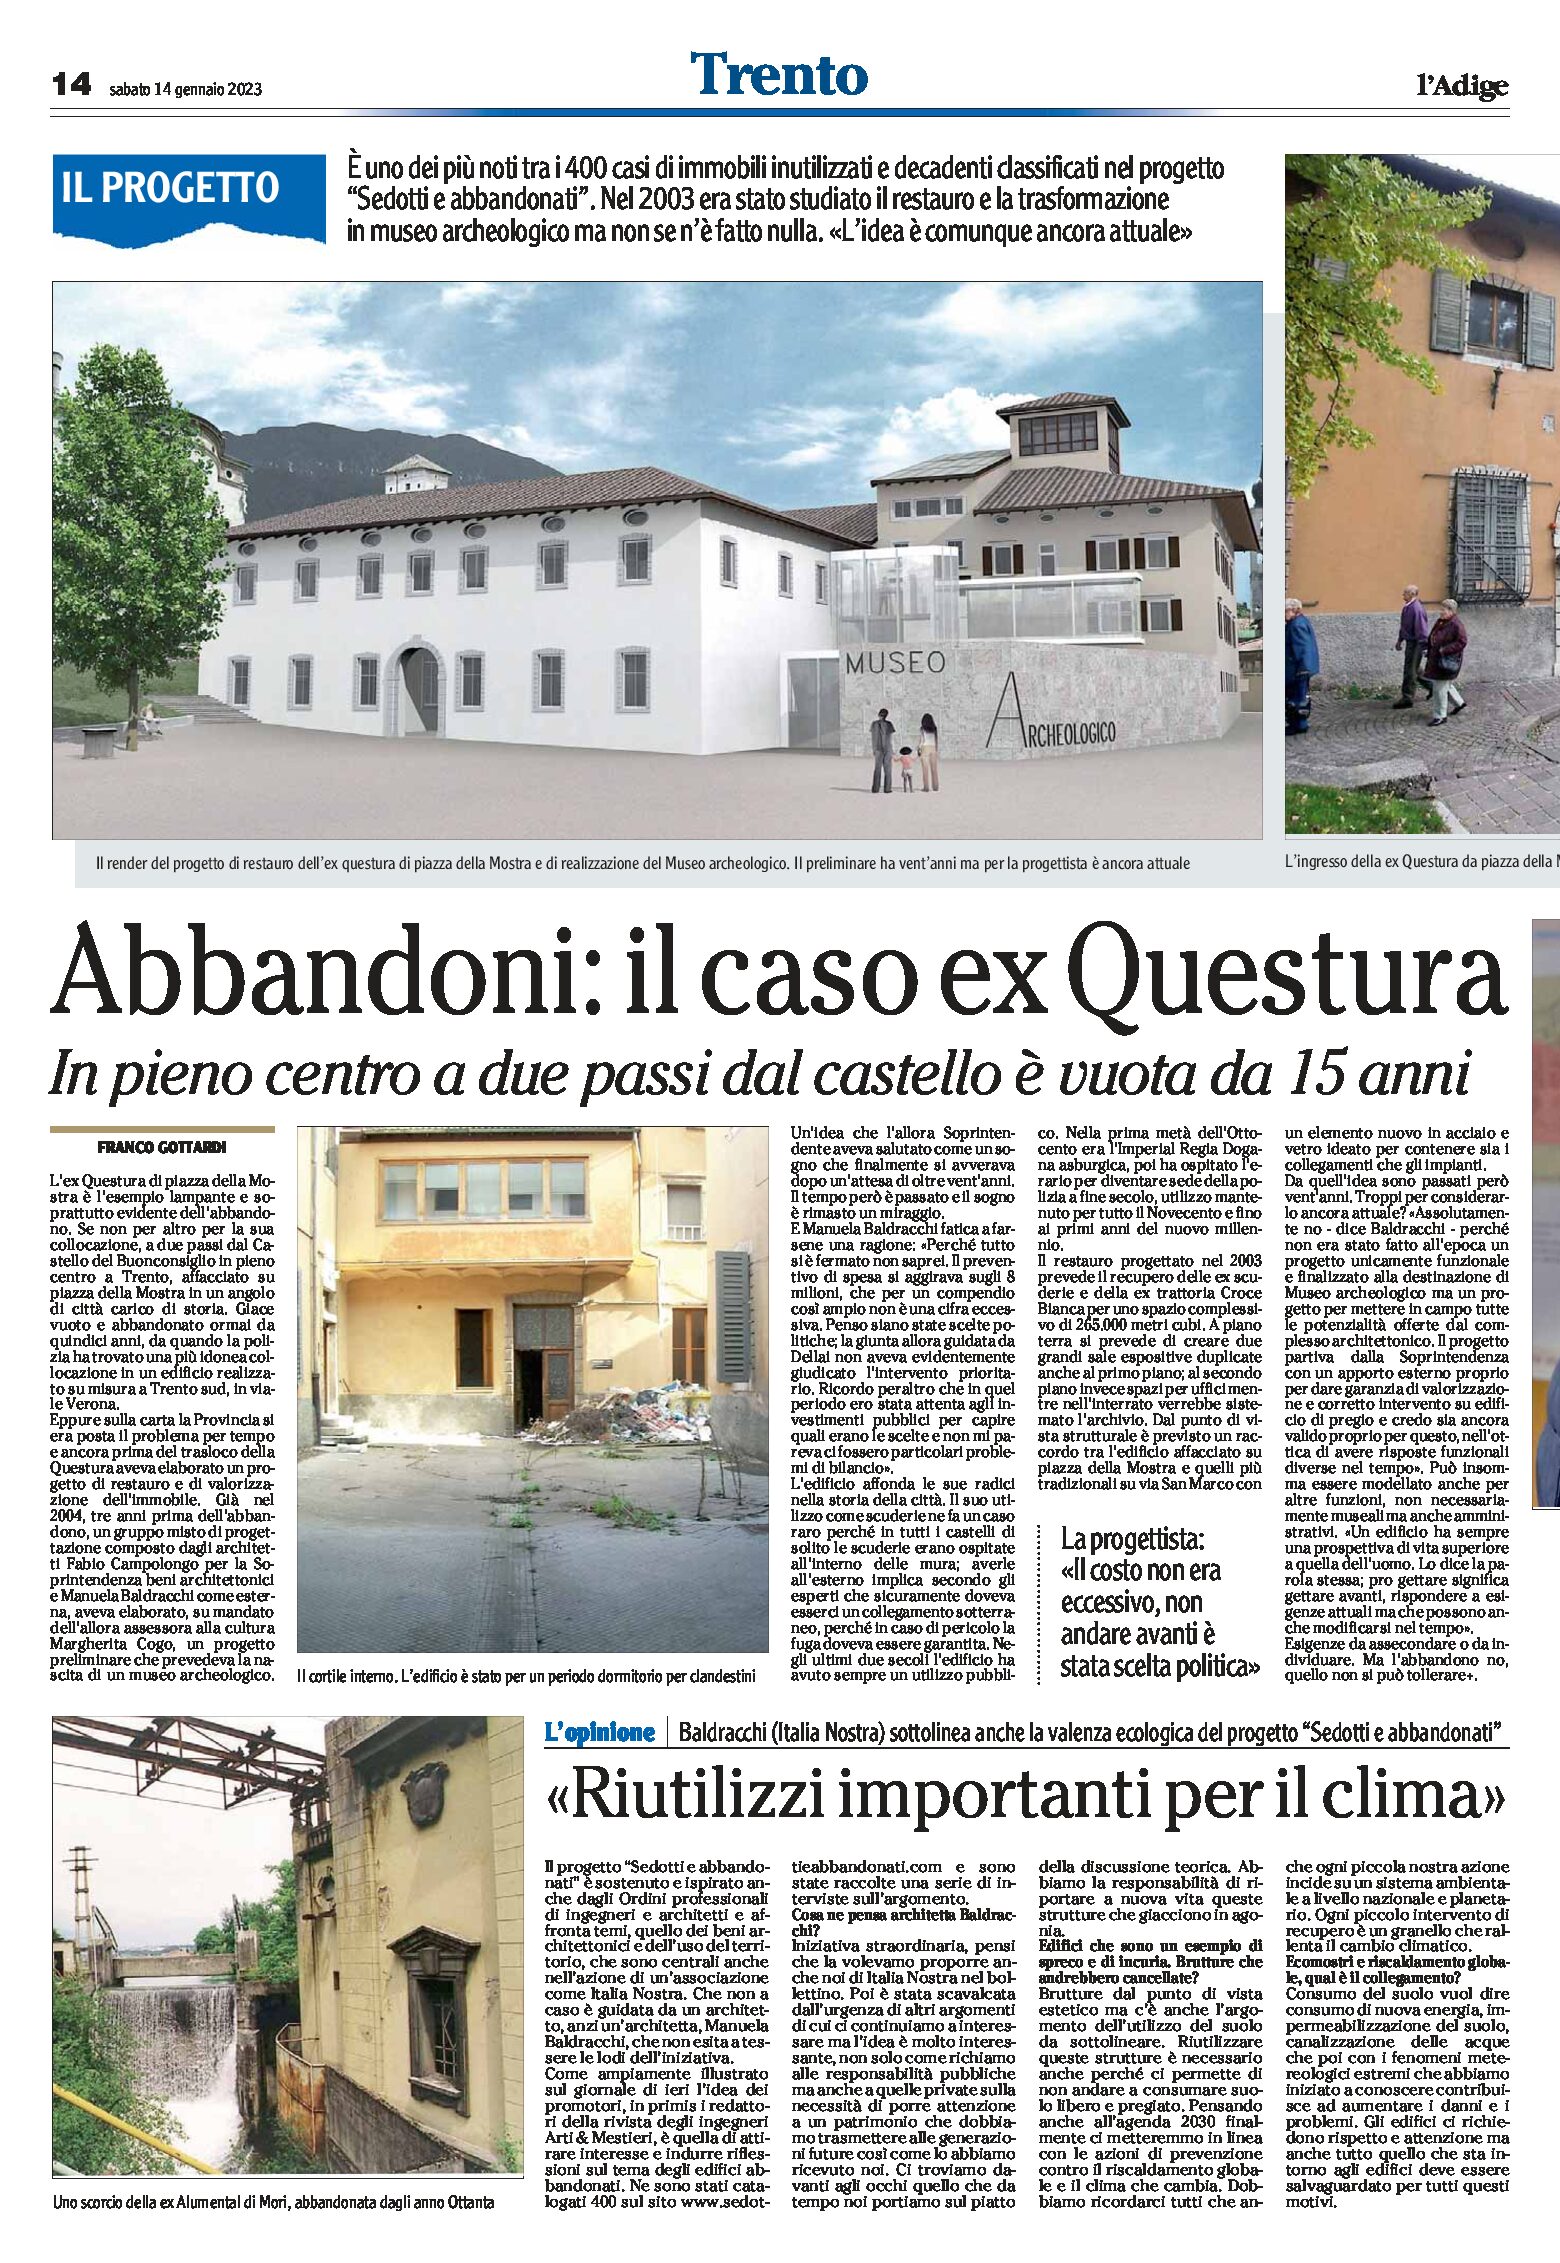 Edifici pubblici abbandonati: il caso ex questura di Trento, a due passi dal castello